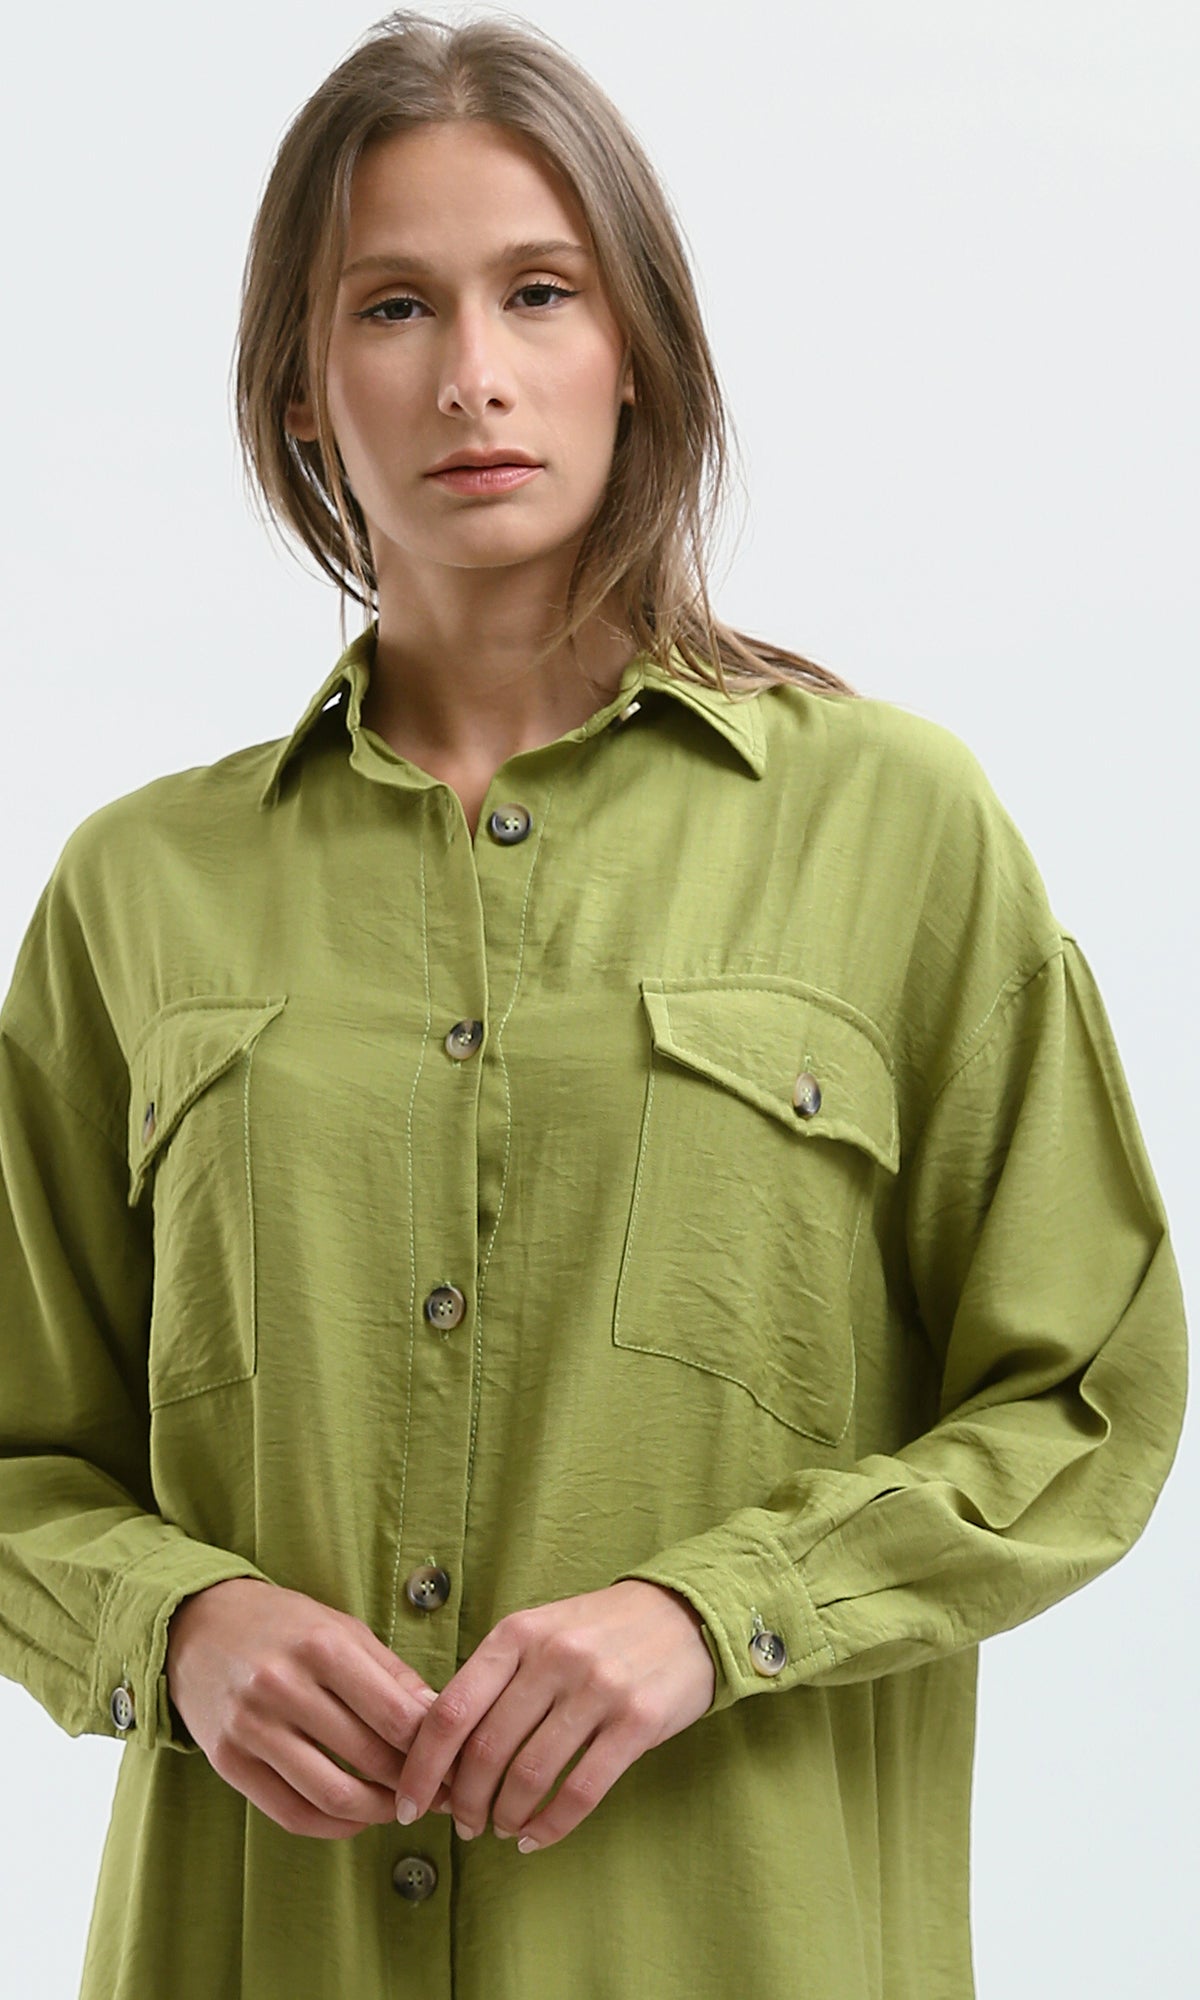 O179834 Casual Apple Green Textured Summer Shirt Dress